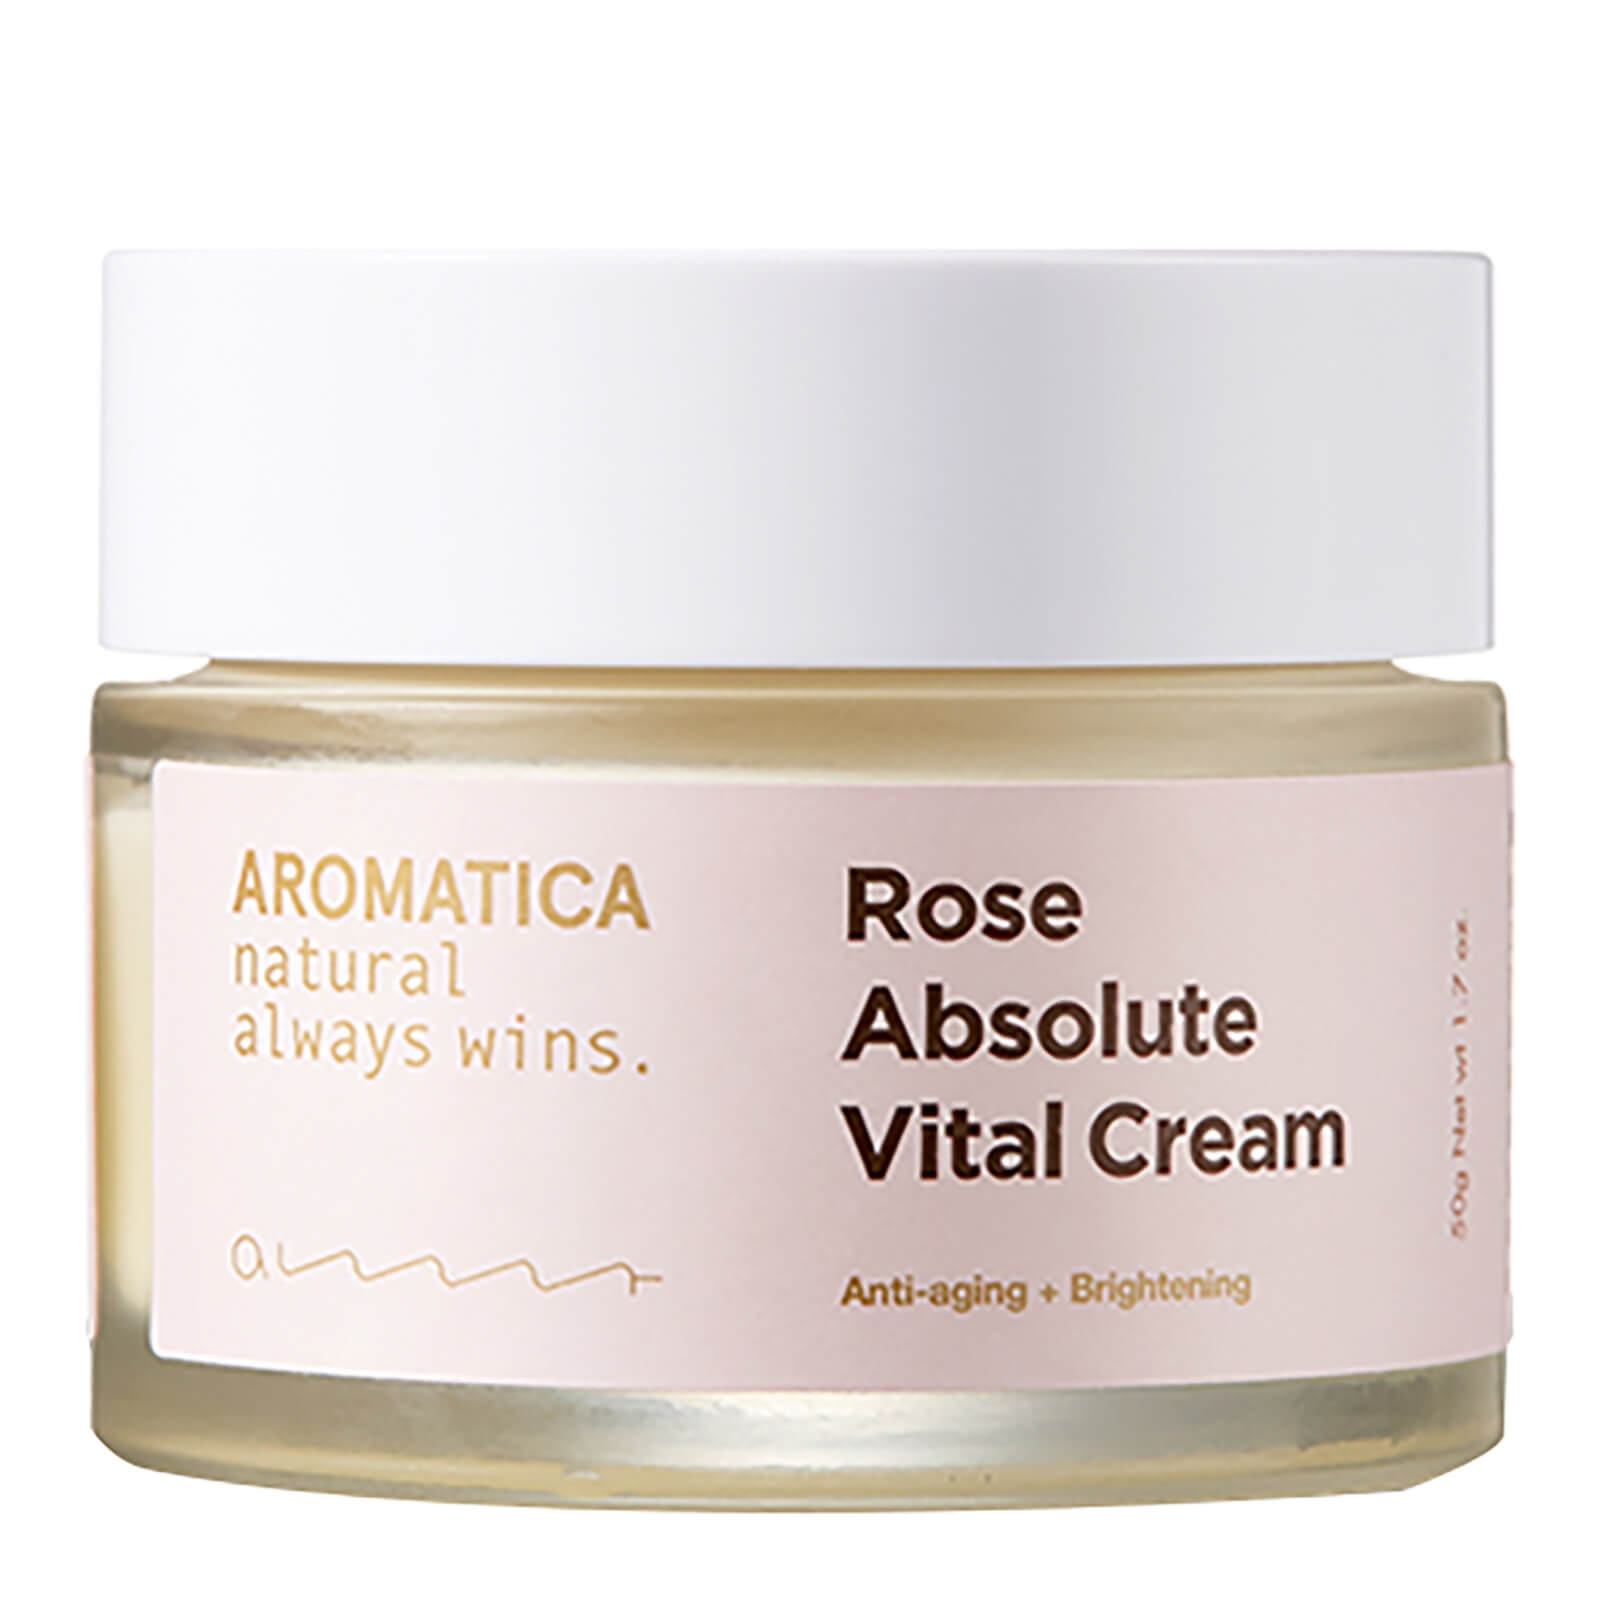 Купить Крем с экстрактом розы AROMATICA Rose Absolute Vital Cream 50 г